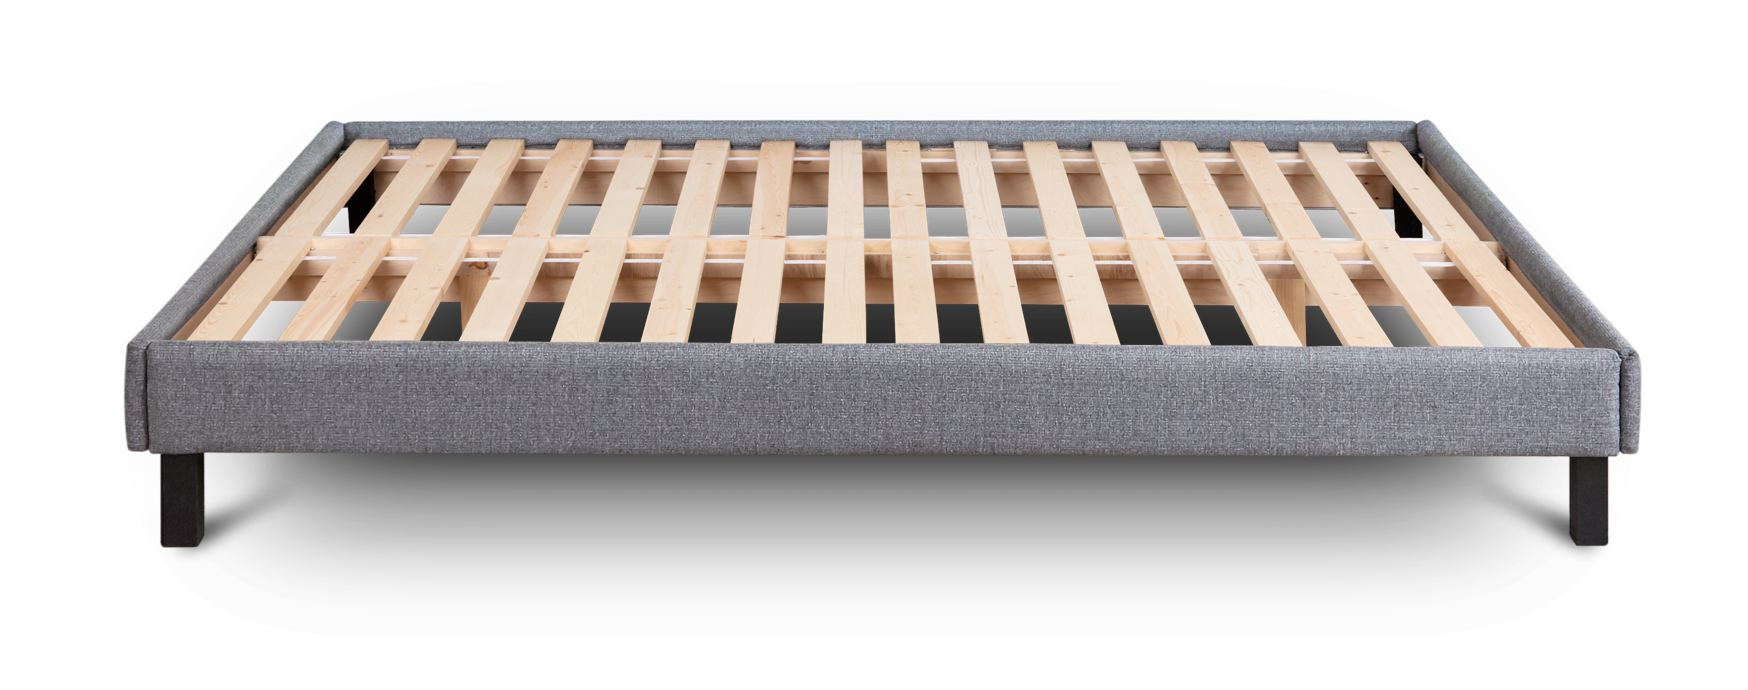 Product image of Endy's Platform Bed Frame.